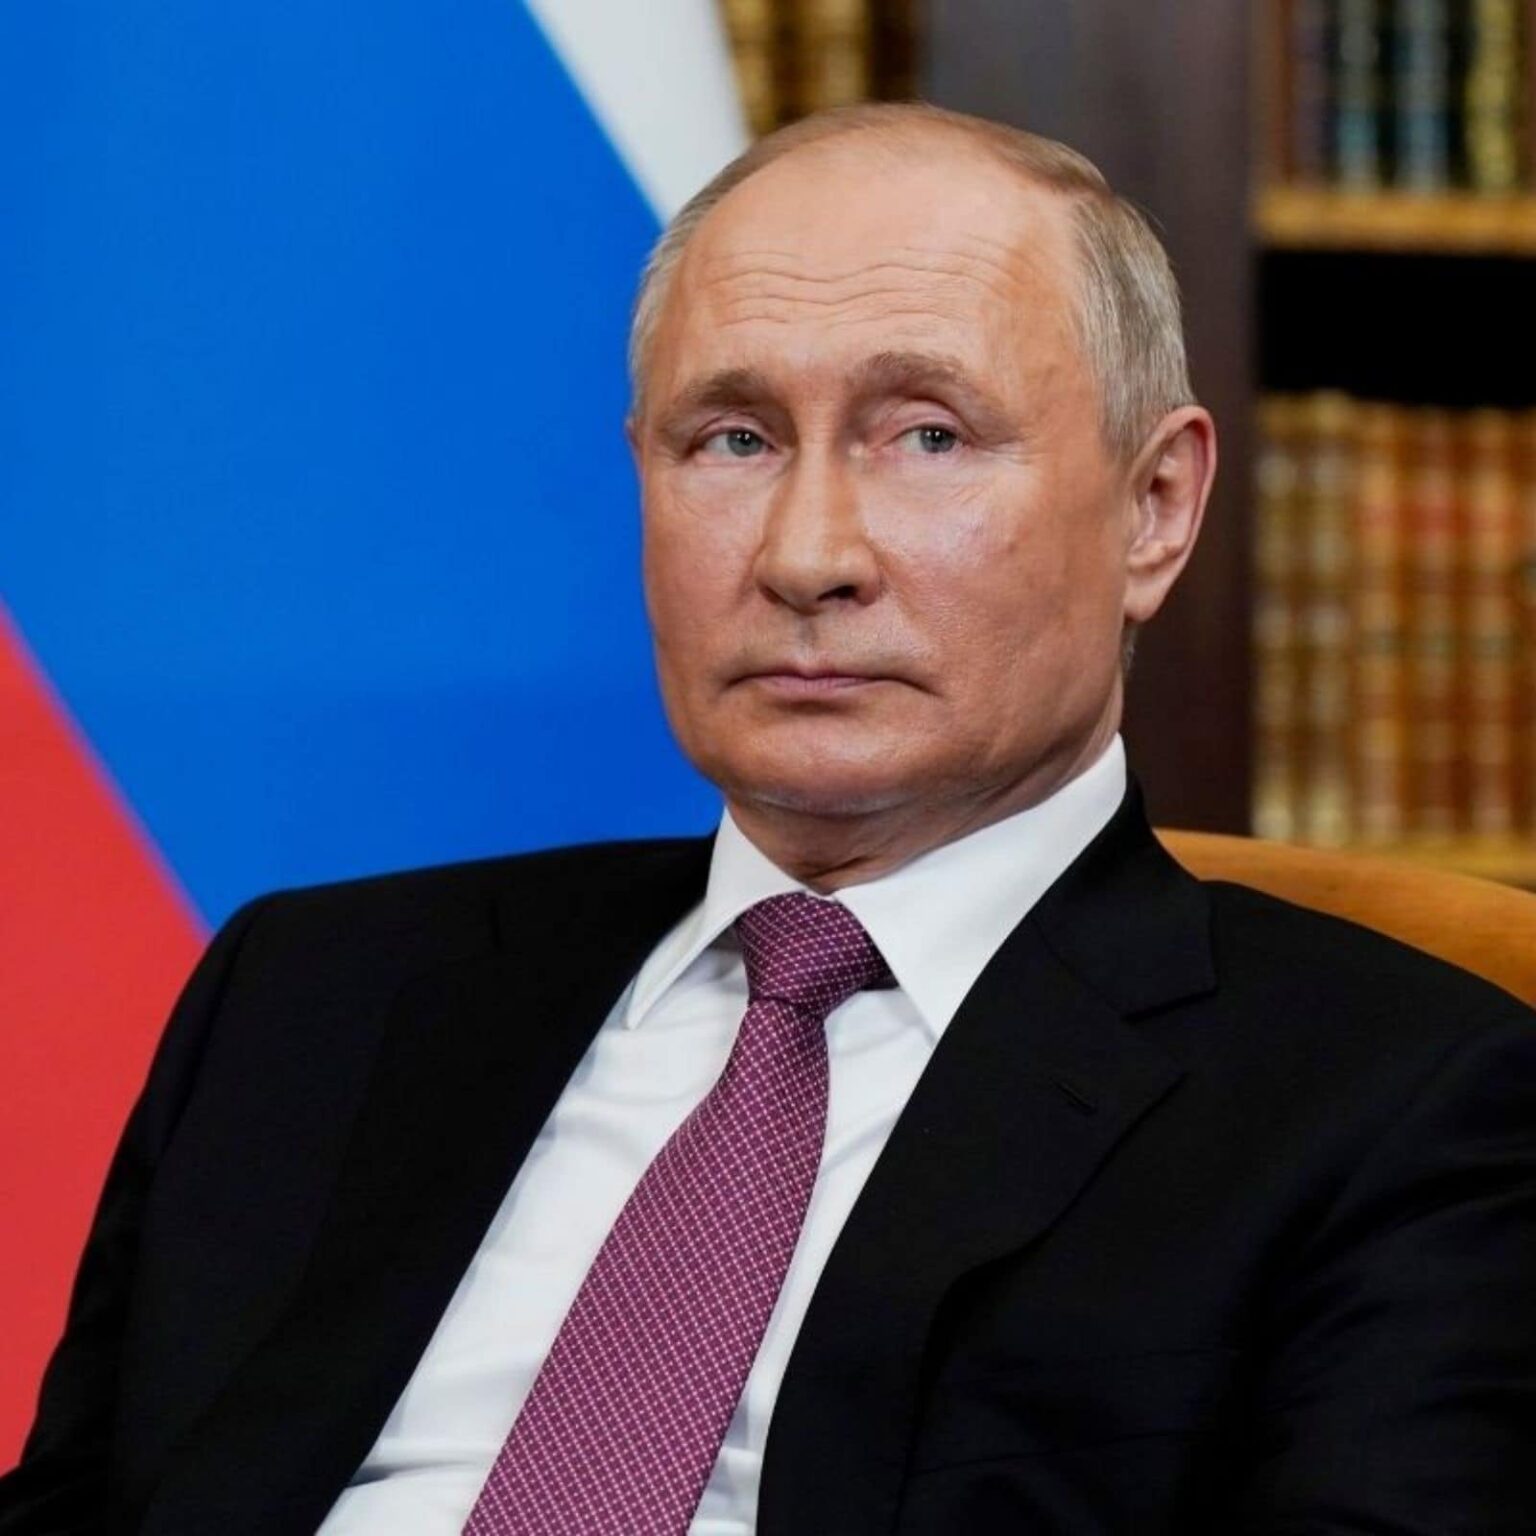 Mit ért félre a Nyugat Putyinnal kapcsolatban?